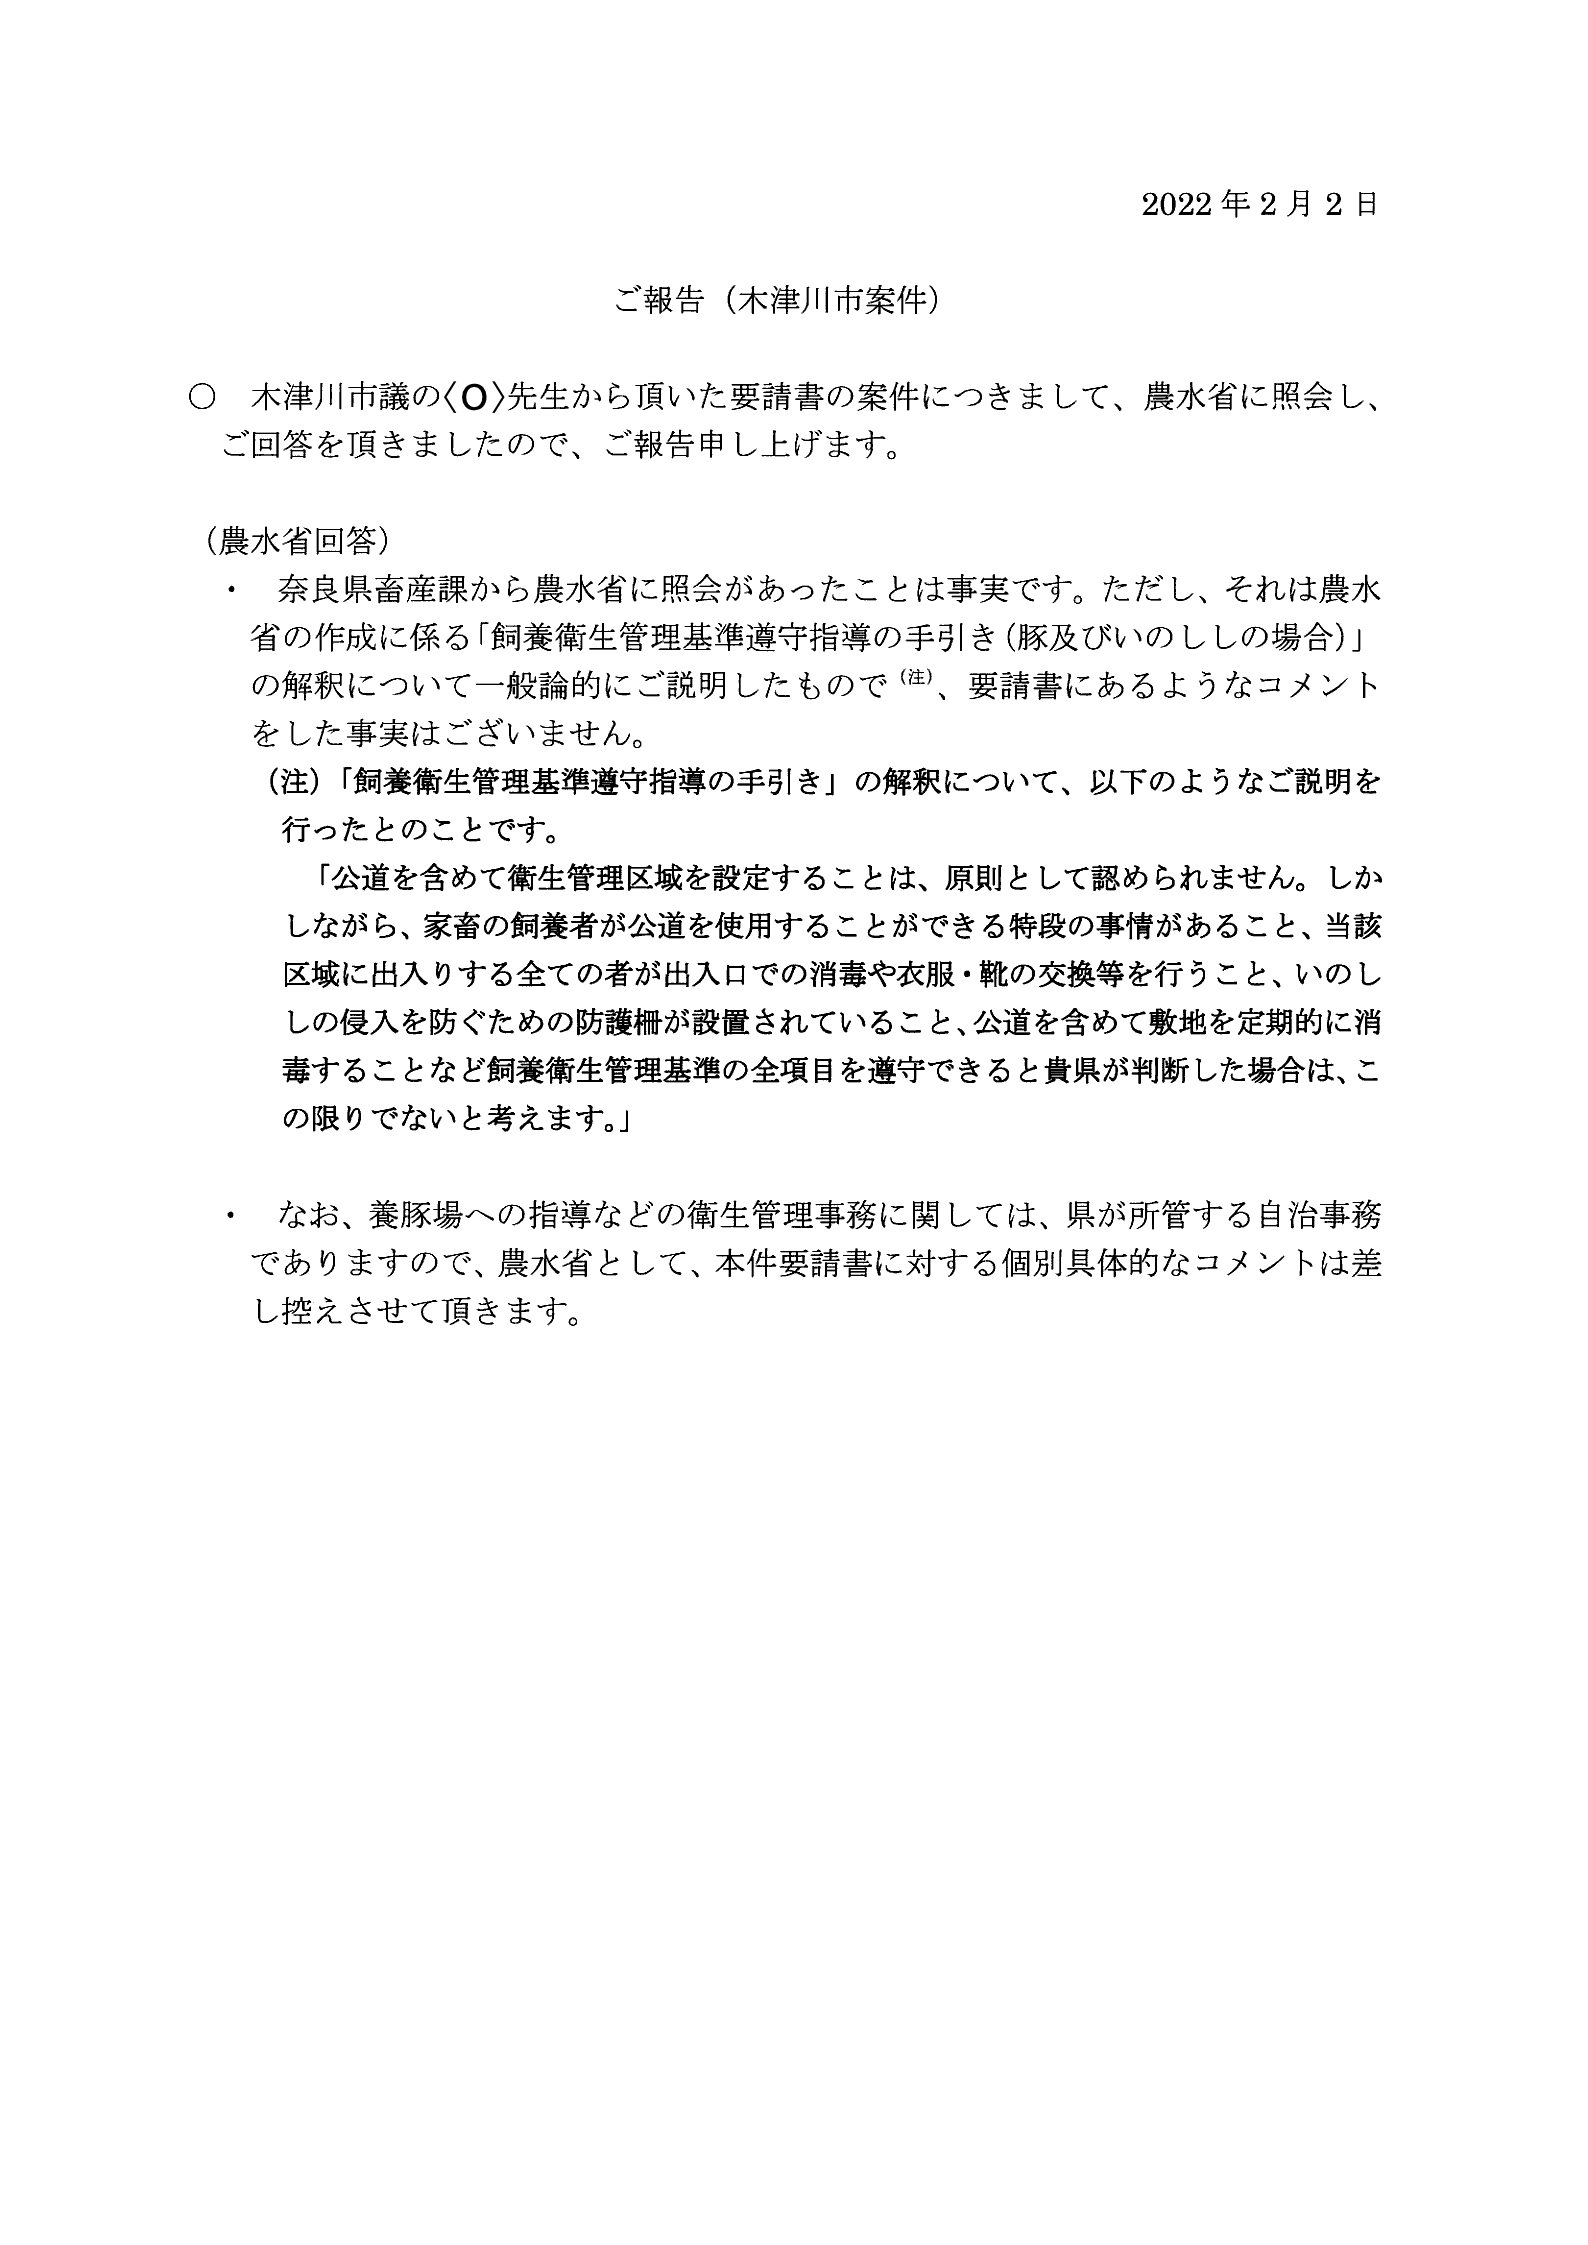 乙154-令和4年2月2日-農水省への照会に関する前原議員からの報告